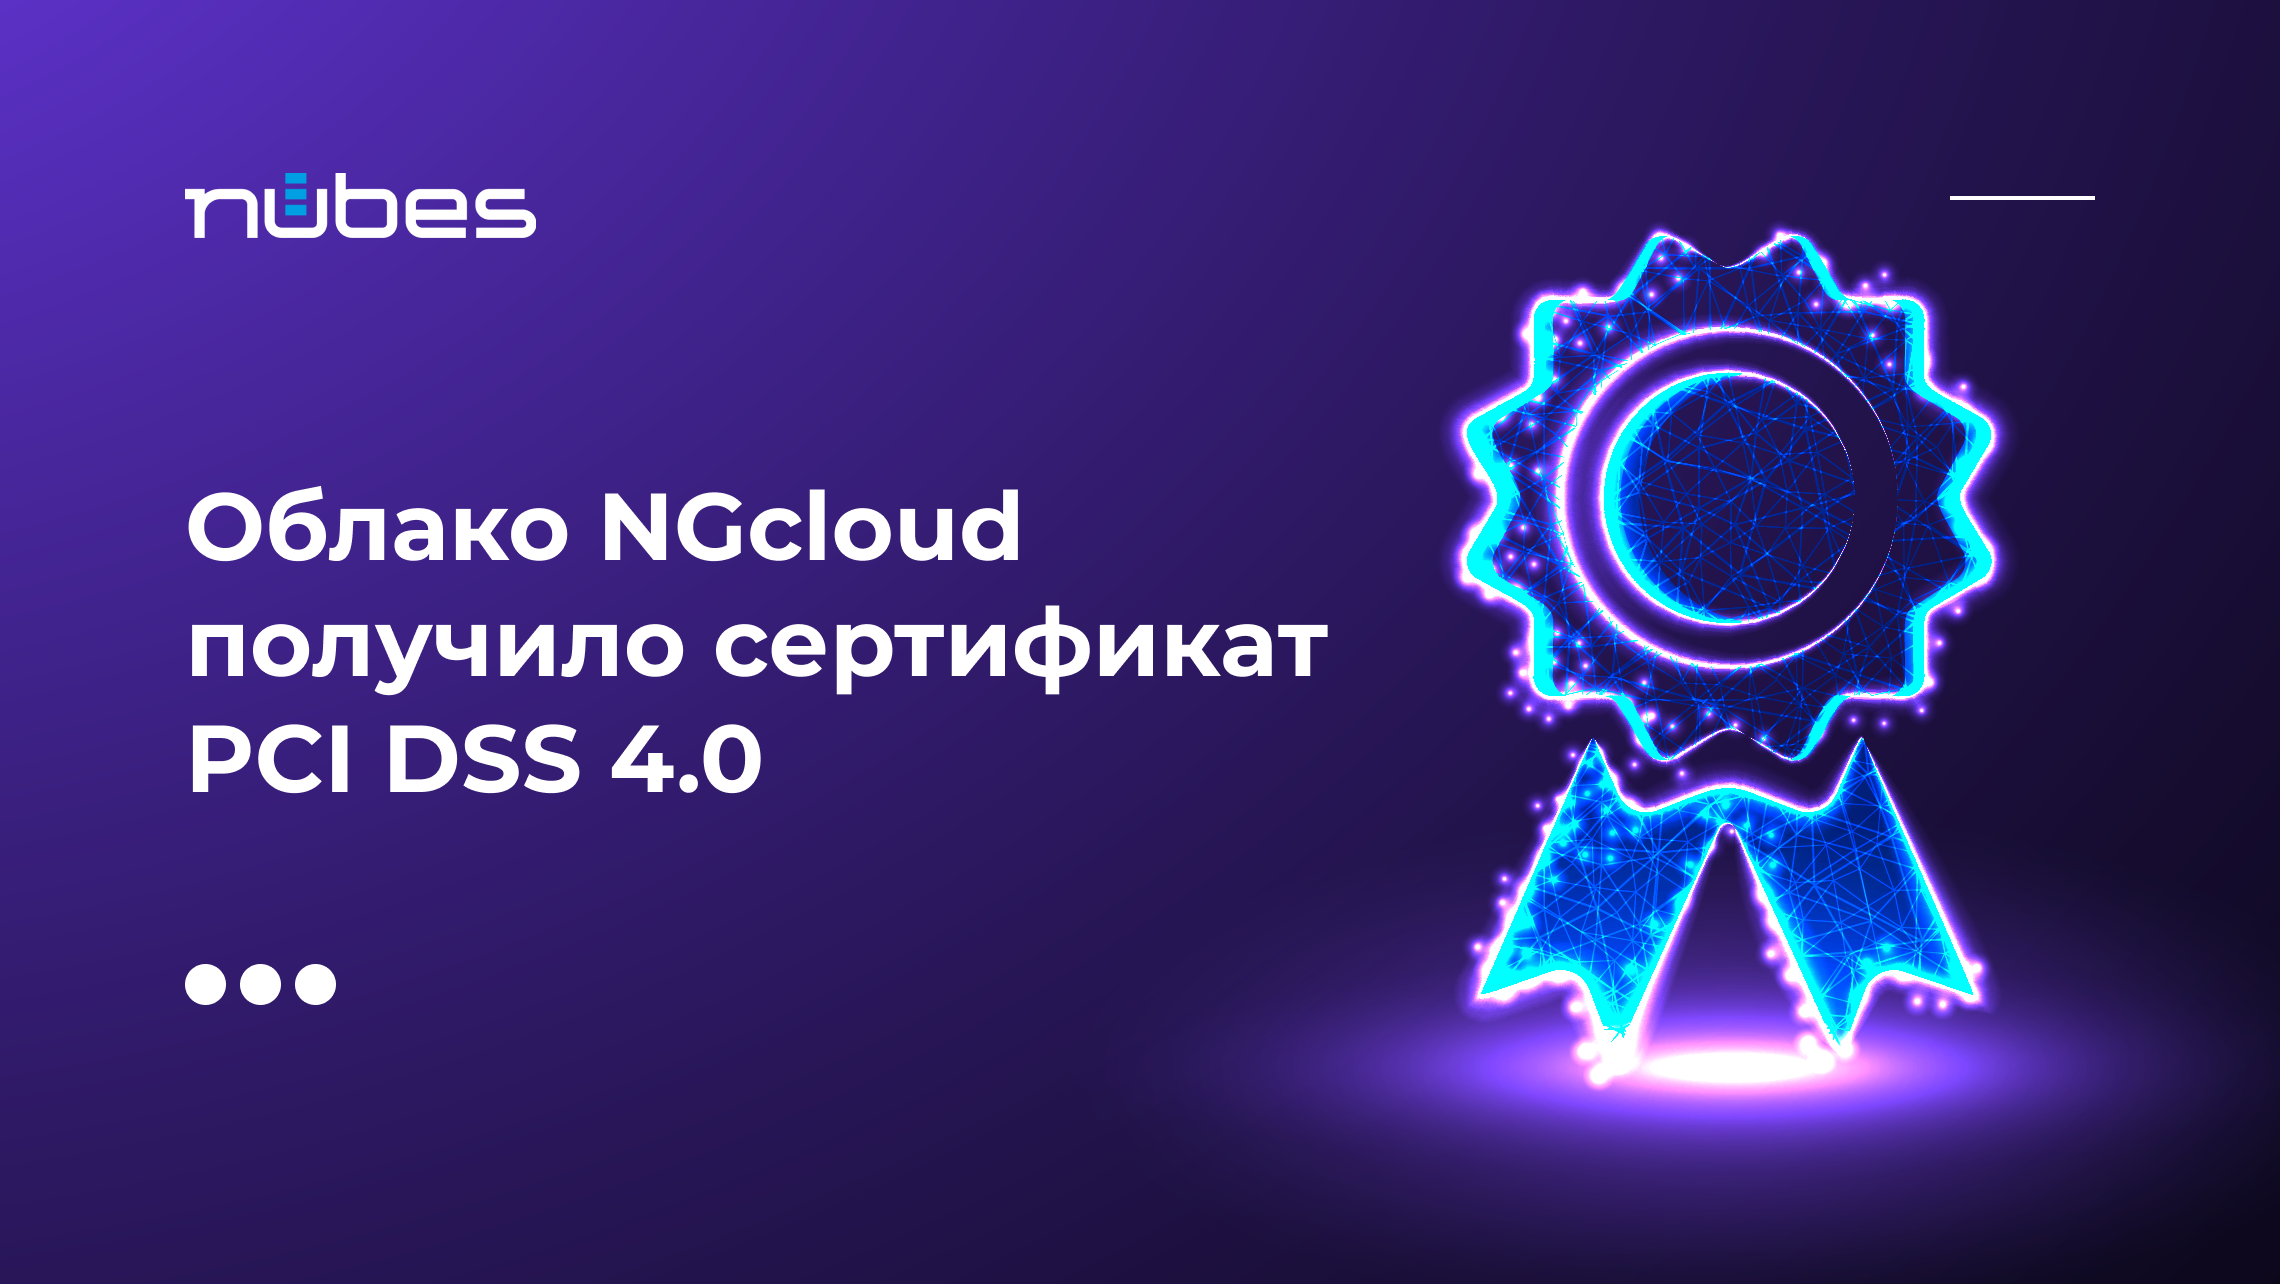 фото: Облако NGcloud получило сертификат PCI DSS 4.0 